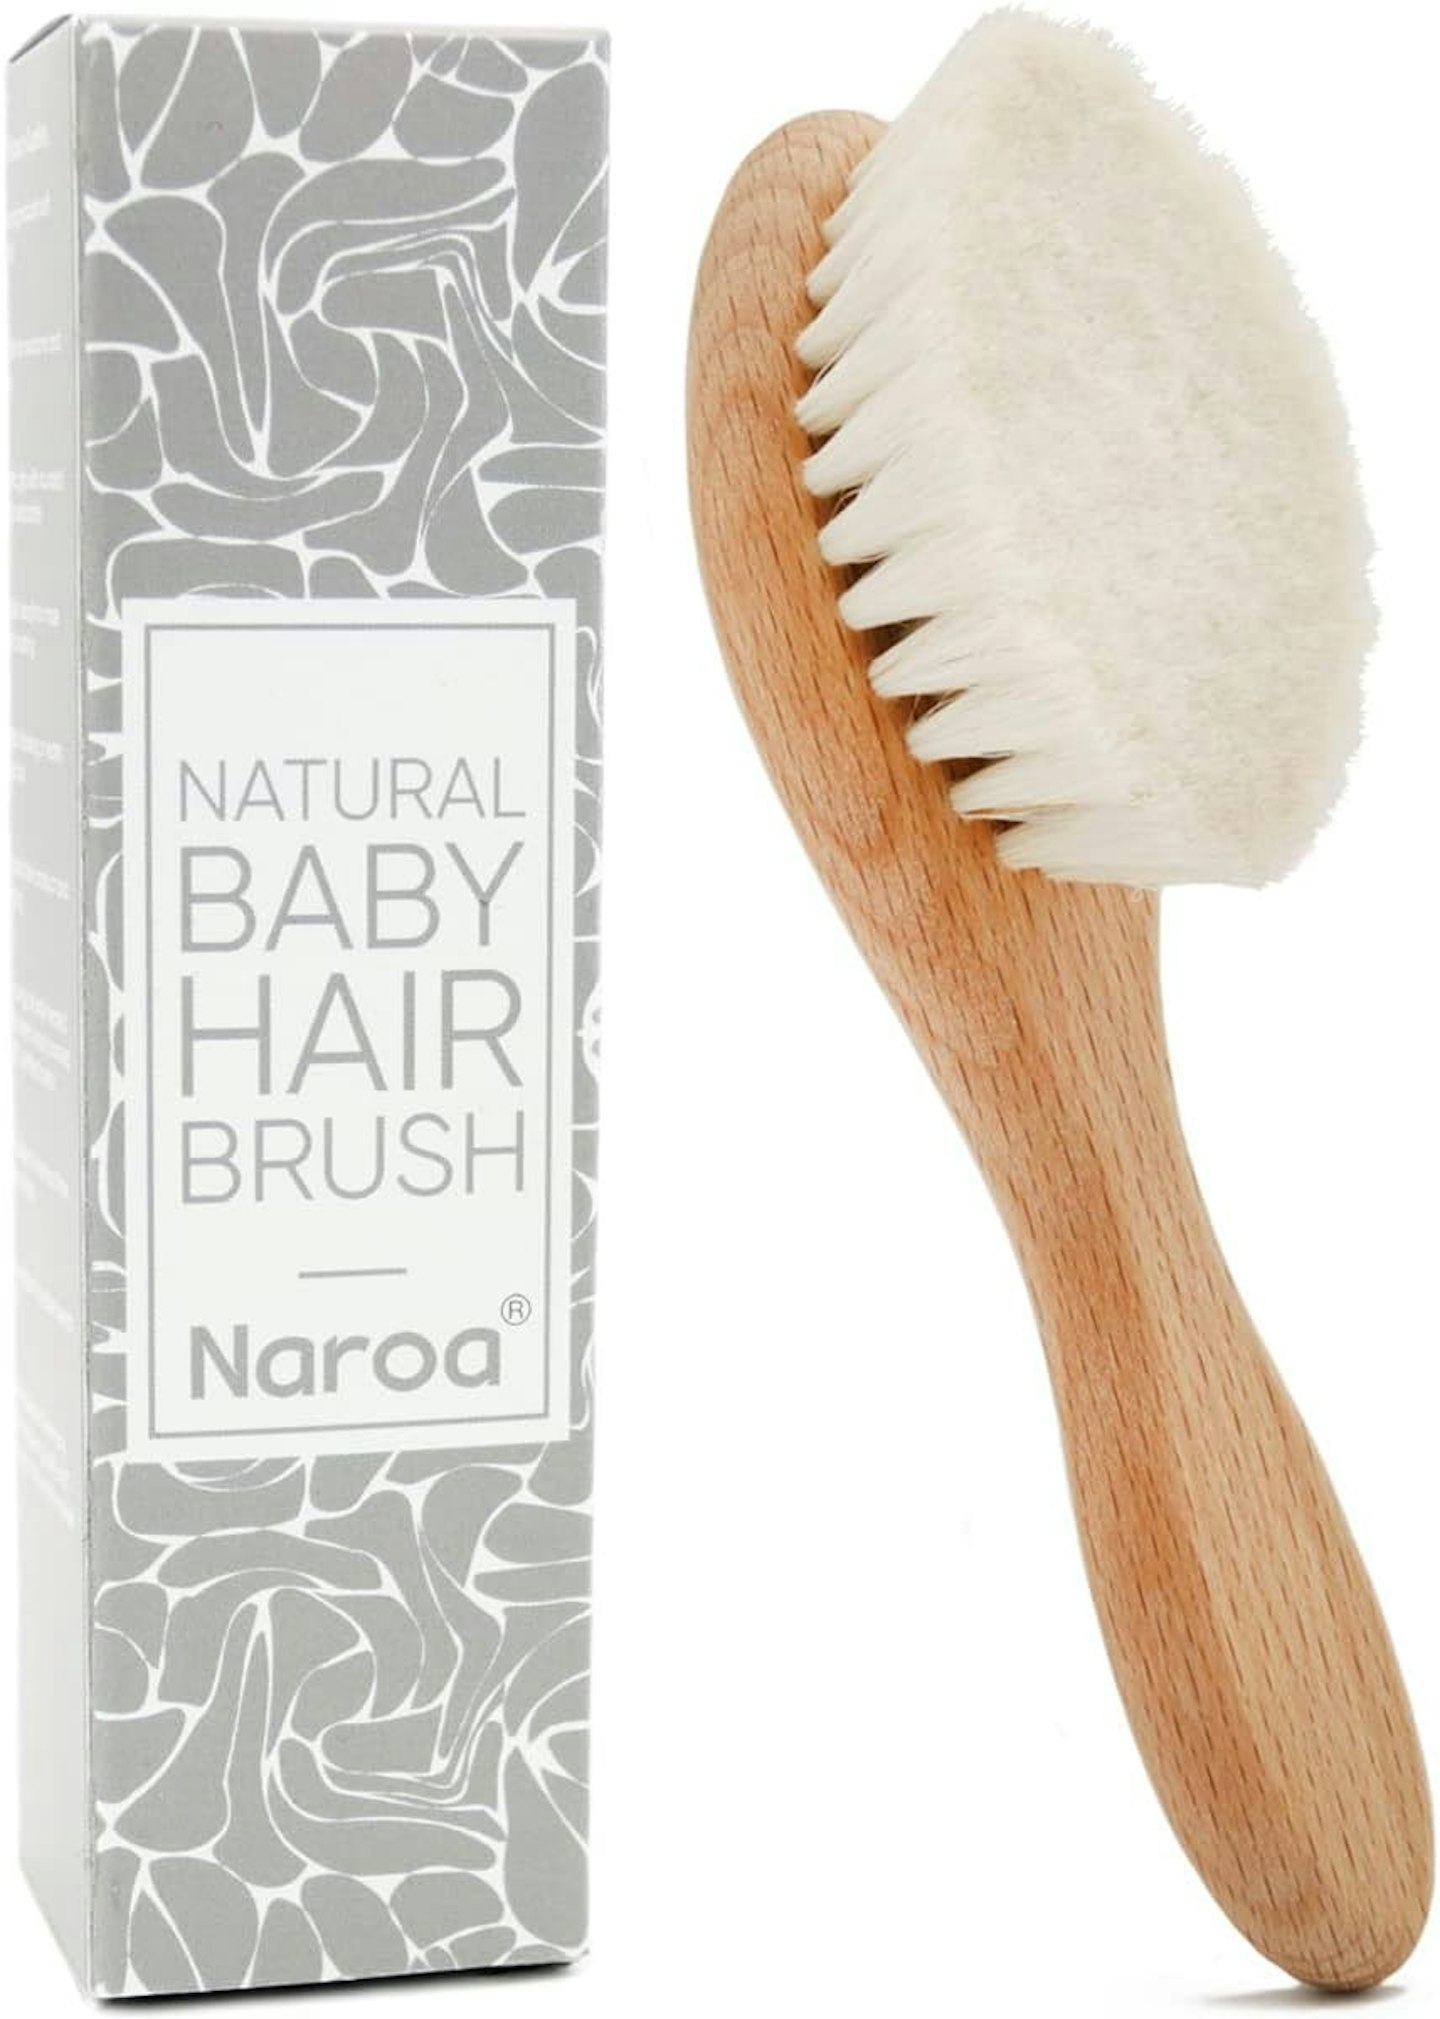 Naroa ® Natural Baby Hair Brush Soft